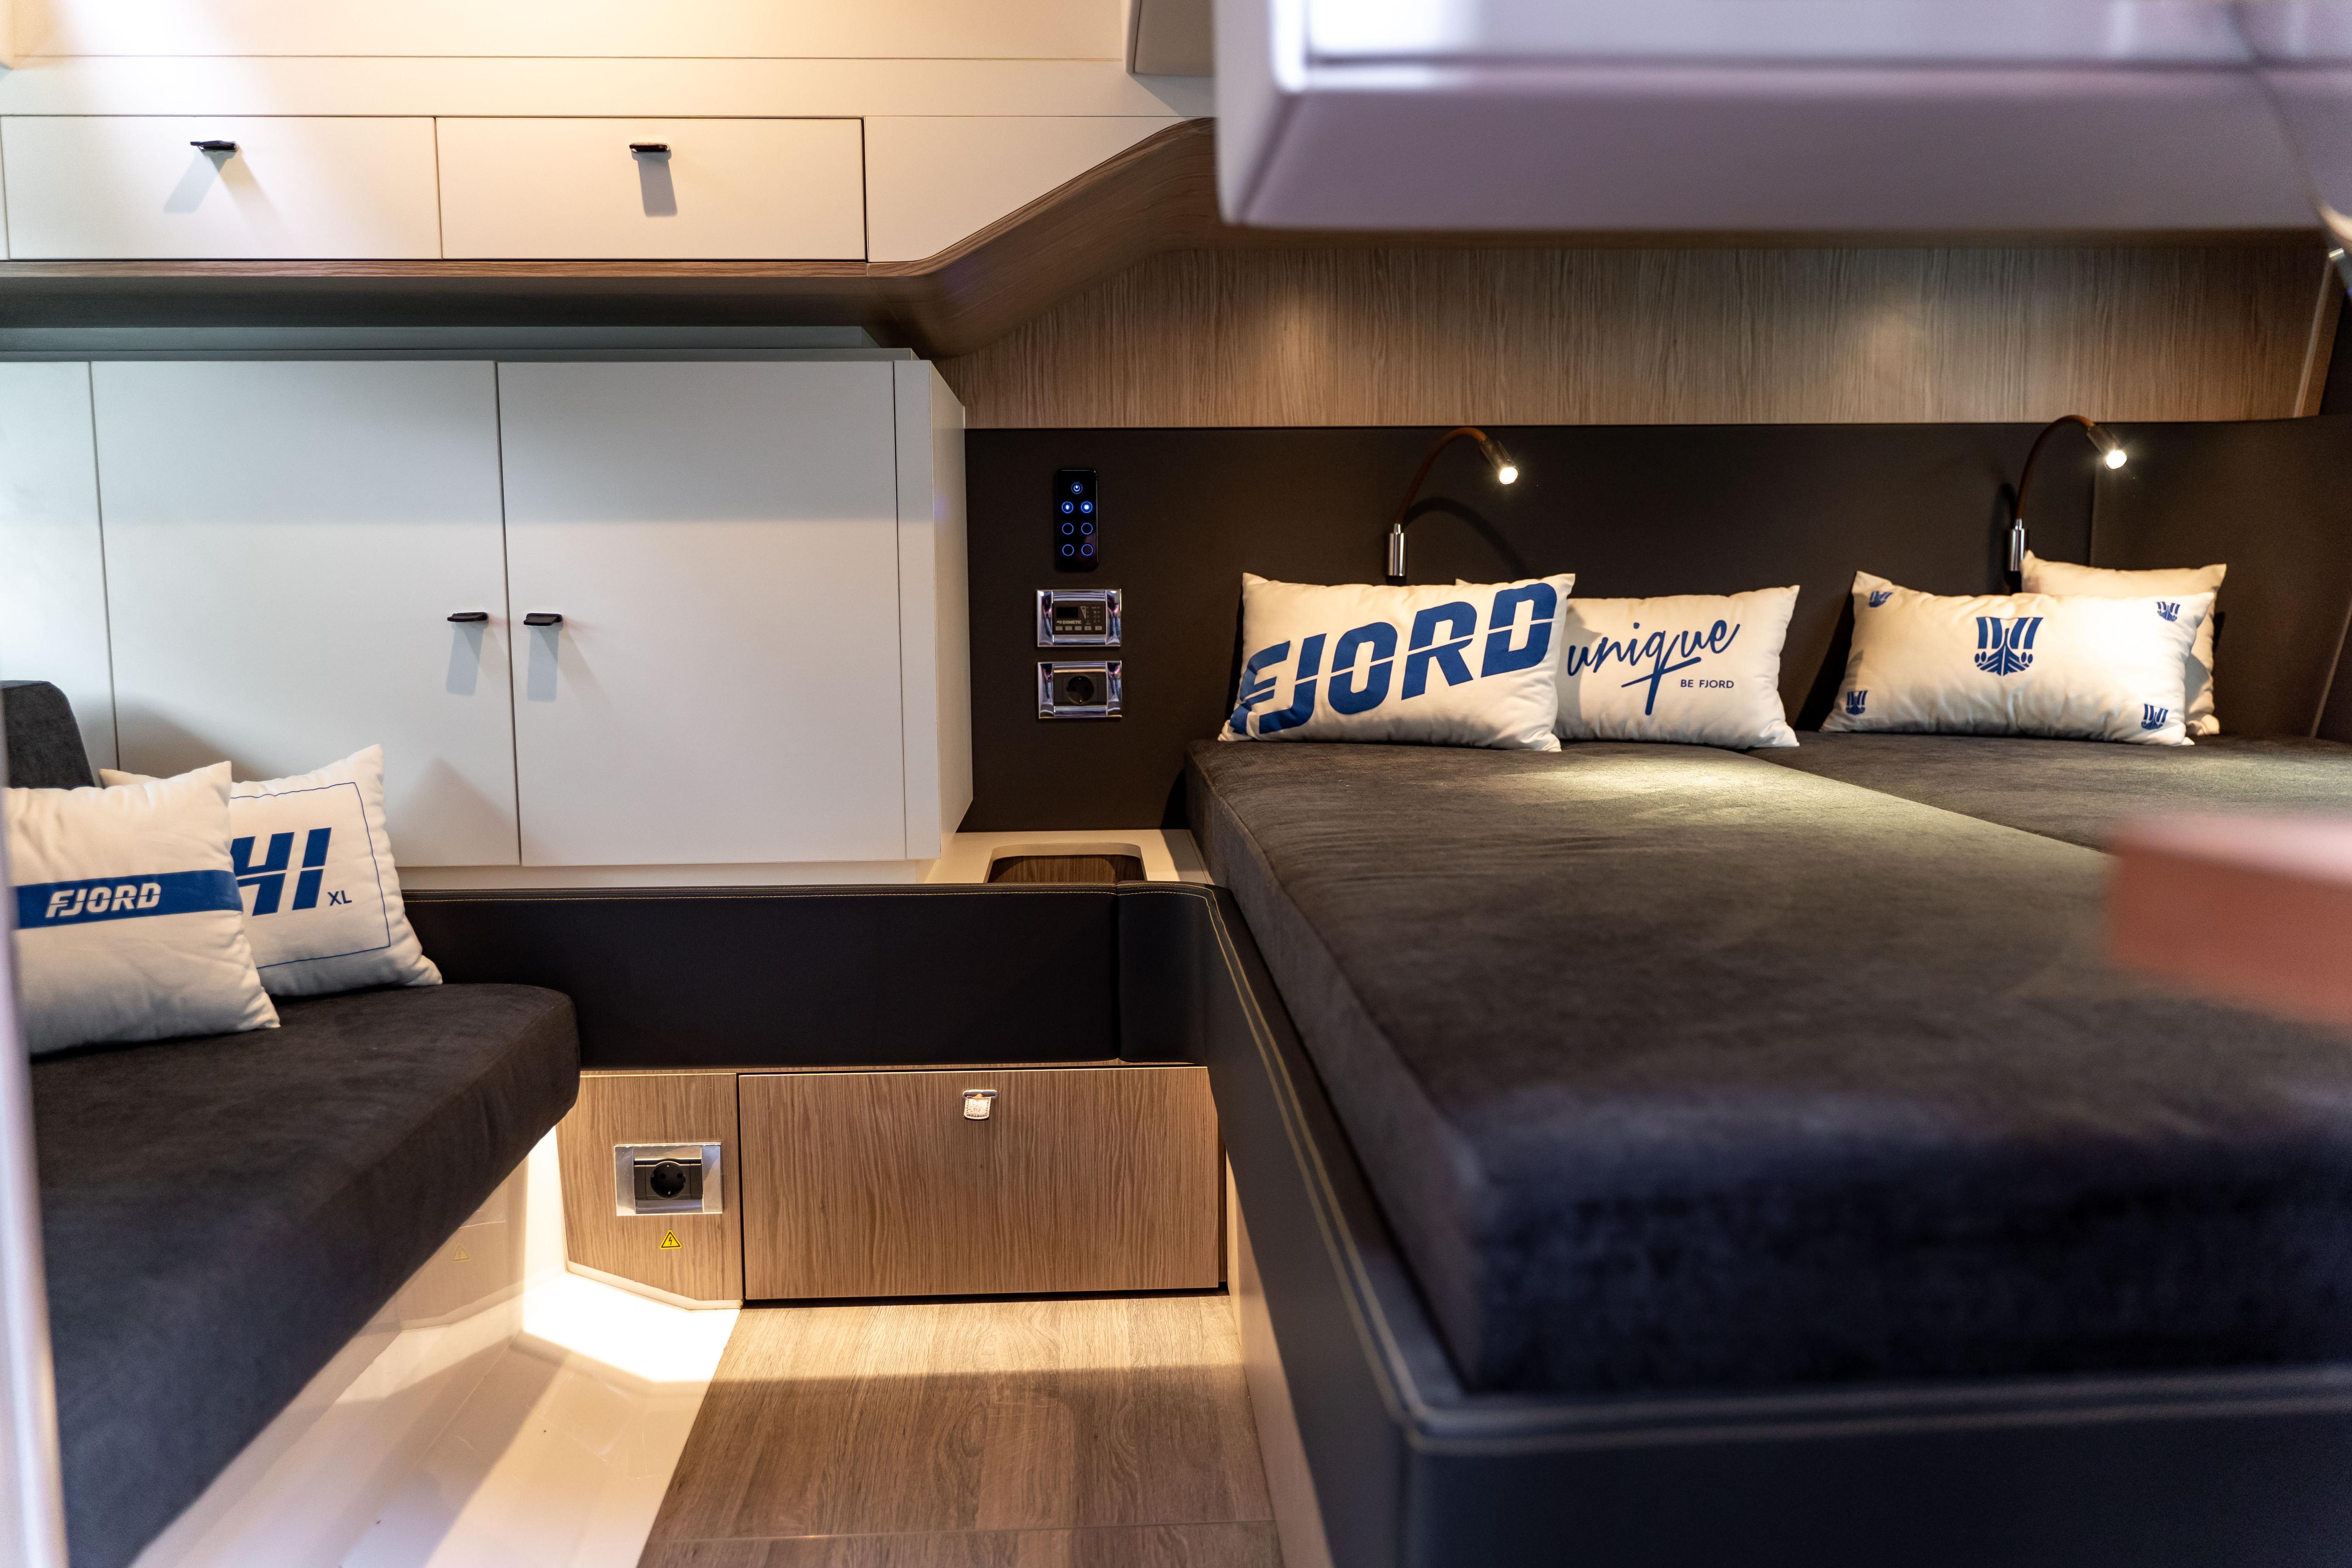 Barco de Diseño Nuevo Fjord 41 XL Egomarine de alquiler en Ibiza